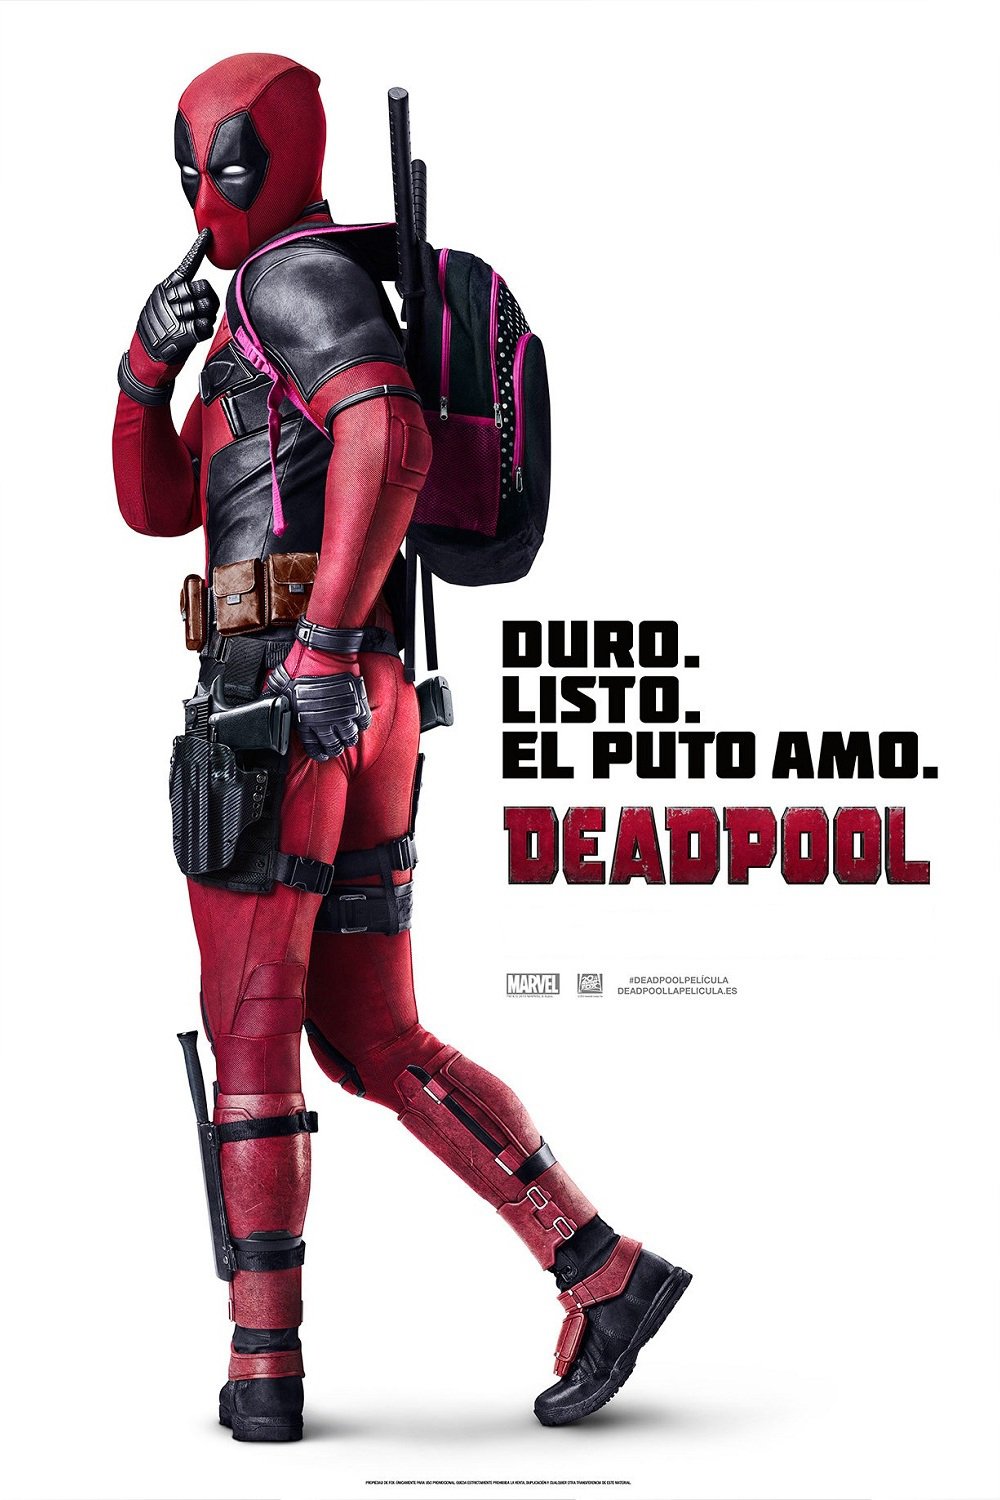 Poster de la película "Deadpool"